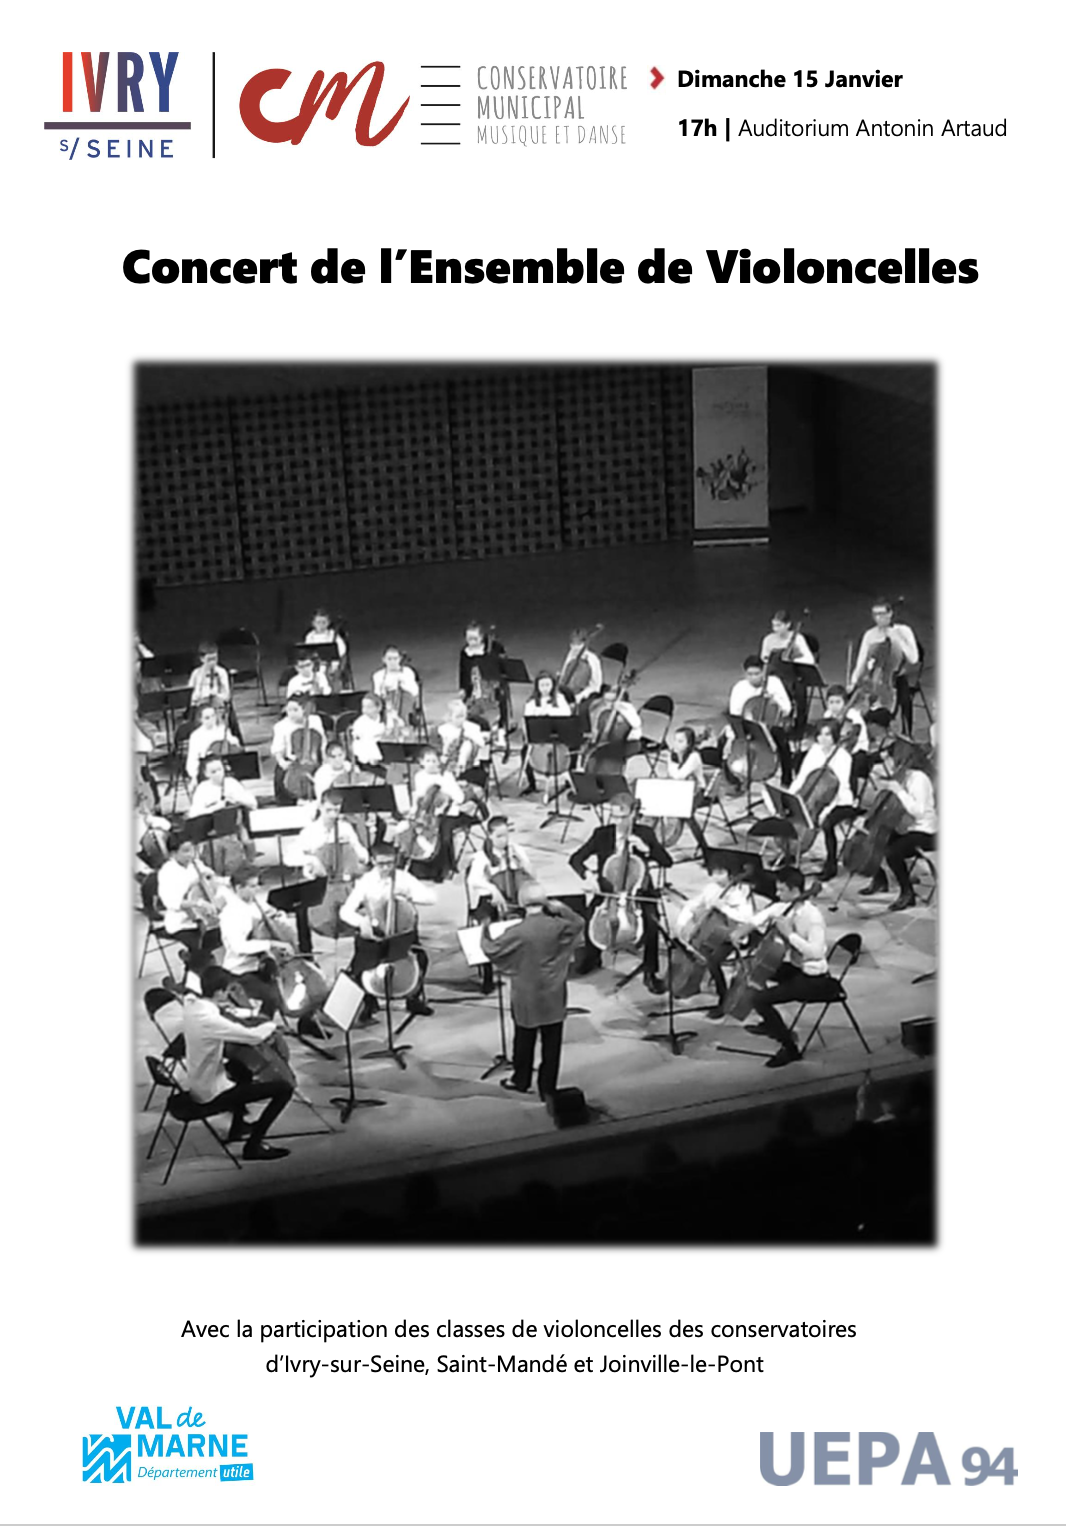 Le projet « Ensemble de Violoncelles » – Concert à Ivry-sur-Seine le 15 janvier 2023